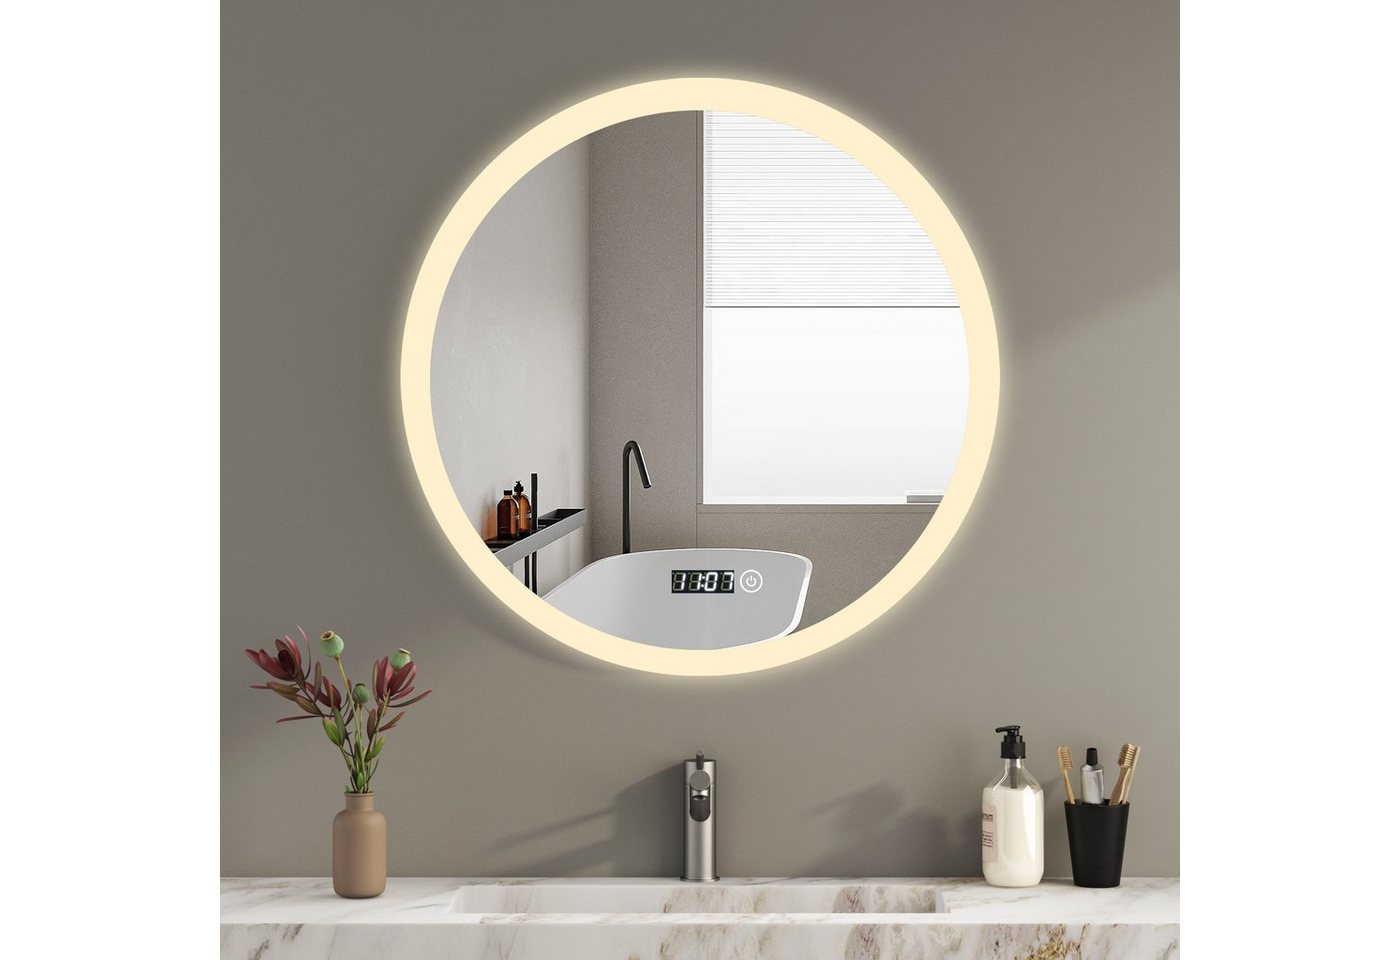 WDWRITTI Badspiegel Rund Led mit beleuchtung und Uhr Rundspiegel 60 cm 3Lichtfarbe Dimmbar (Wandspiegel, Speicherfunktion), Touch,Wandschalter auswählbar, Energiesparend, IP44 von WDWRITTI